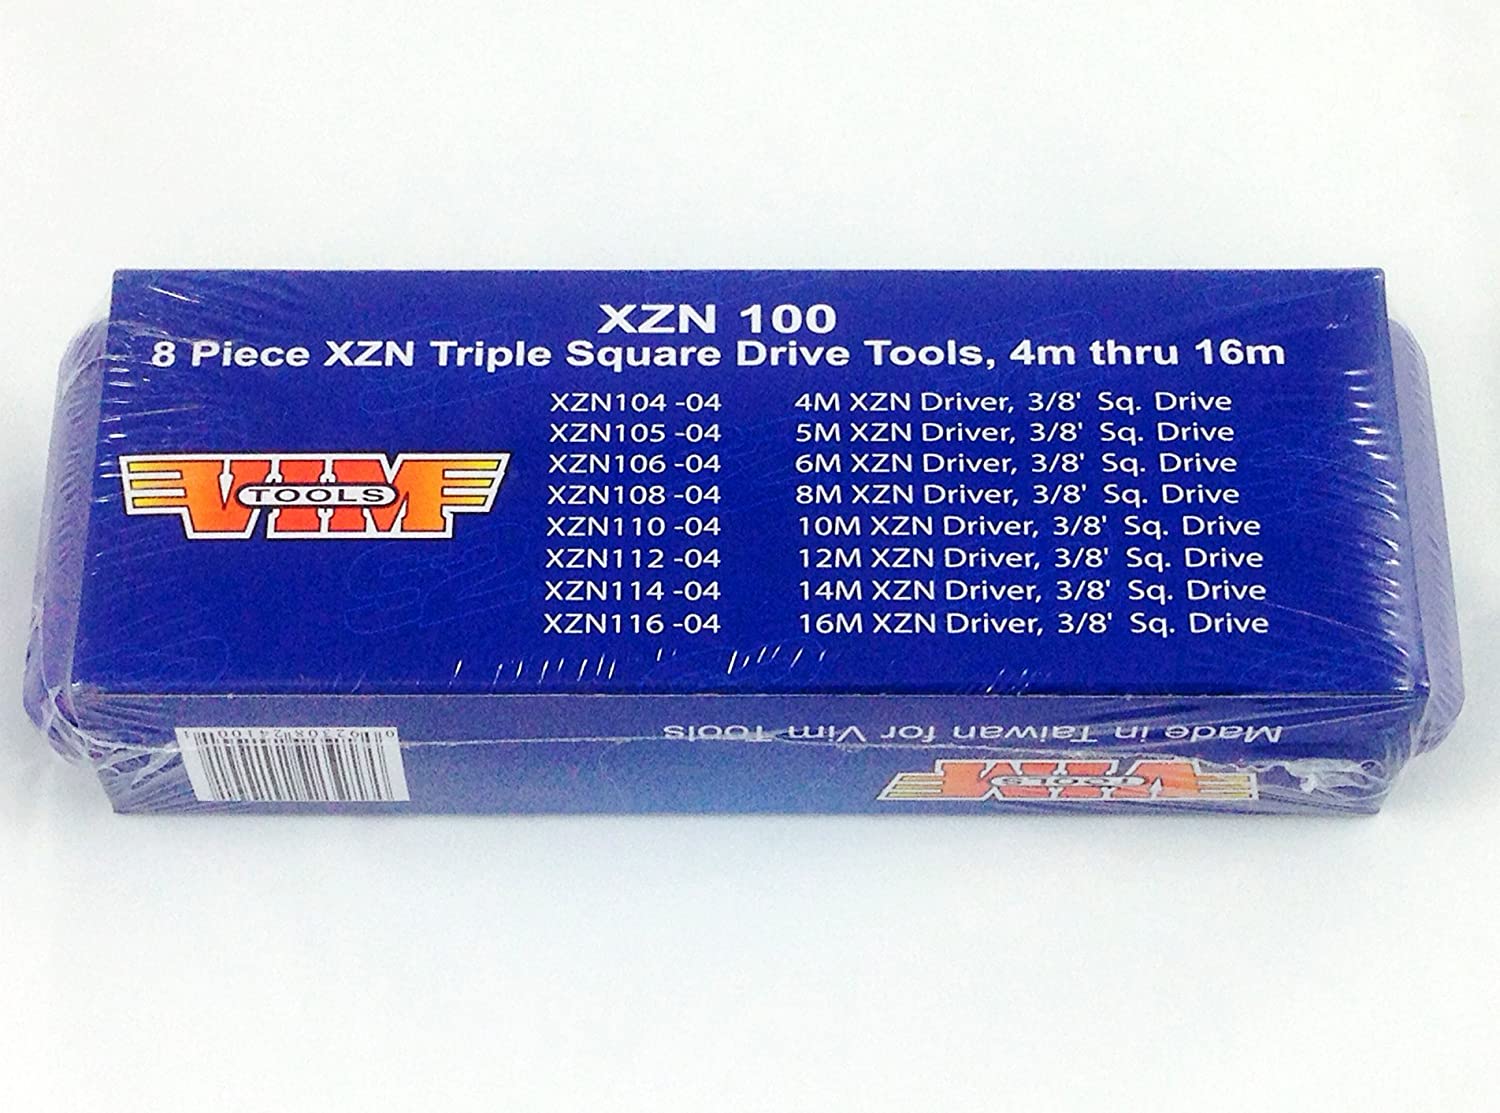 8 PC Triple Square DR Set (VIM-XZN100) - MPR Tools & Equipment